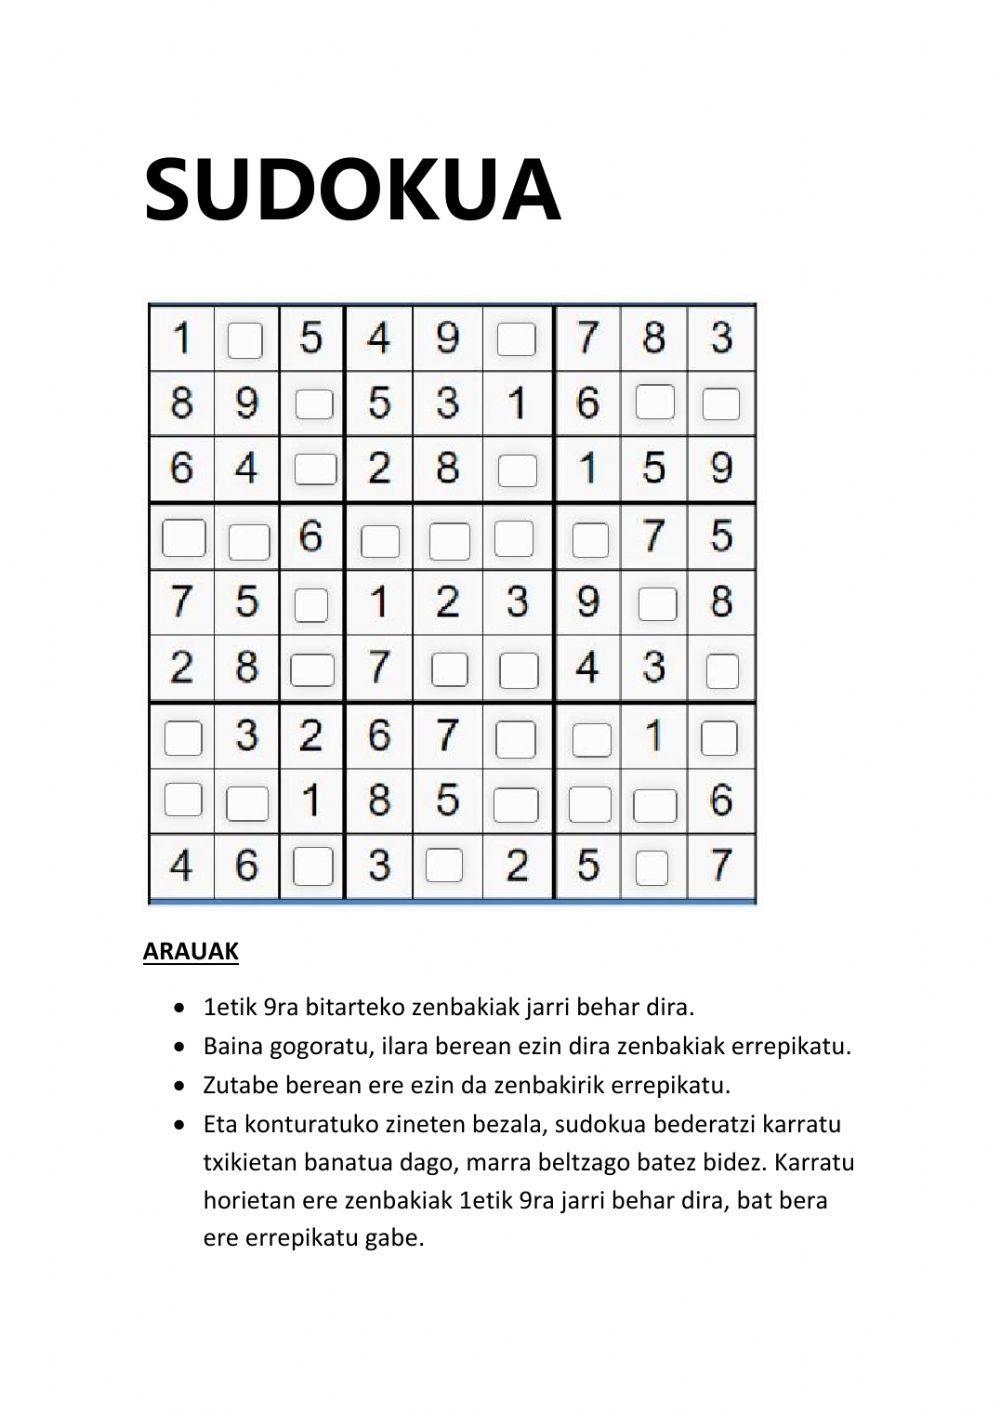 Sudokua